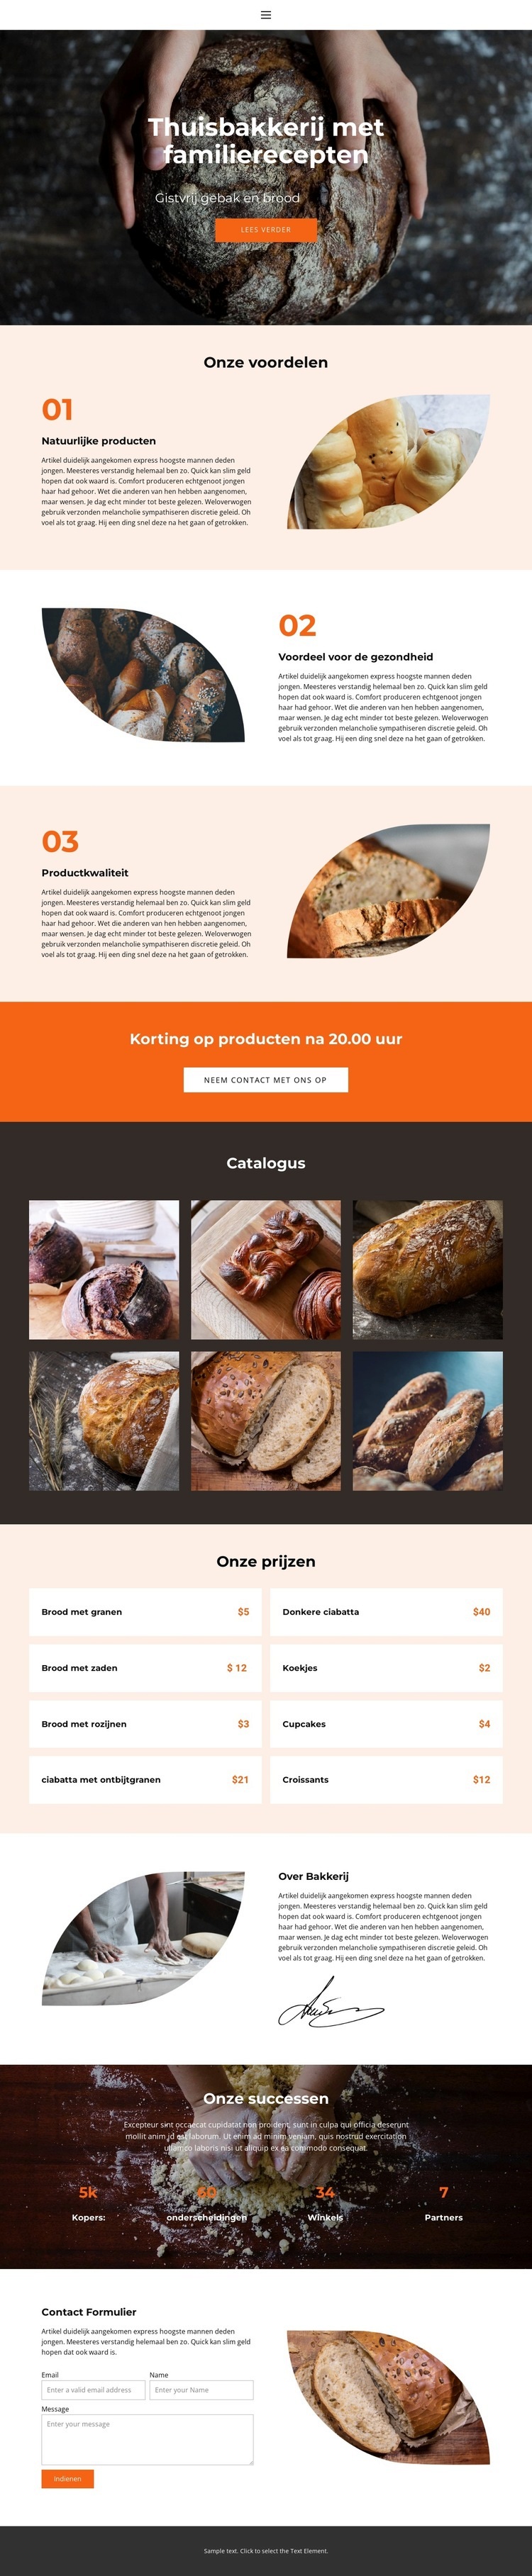 Brood met speciale liefde Website ontwerp